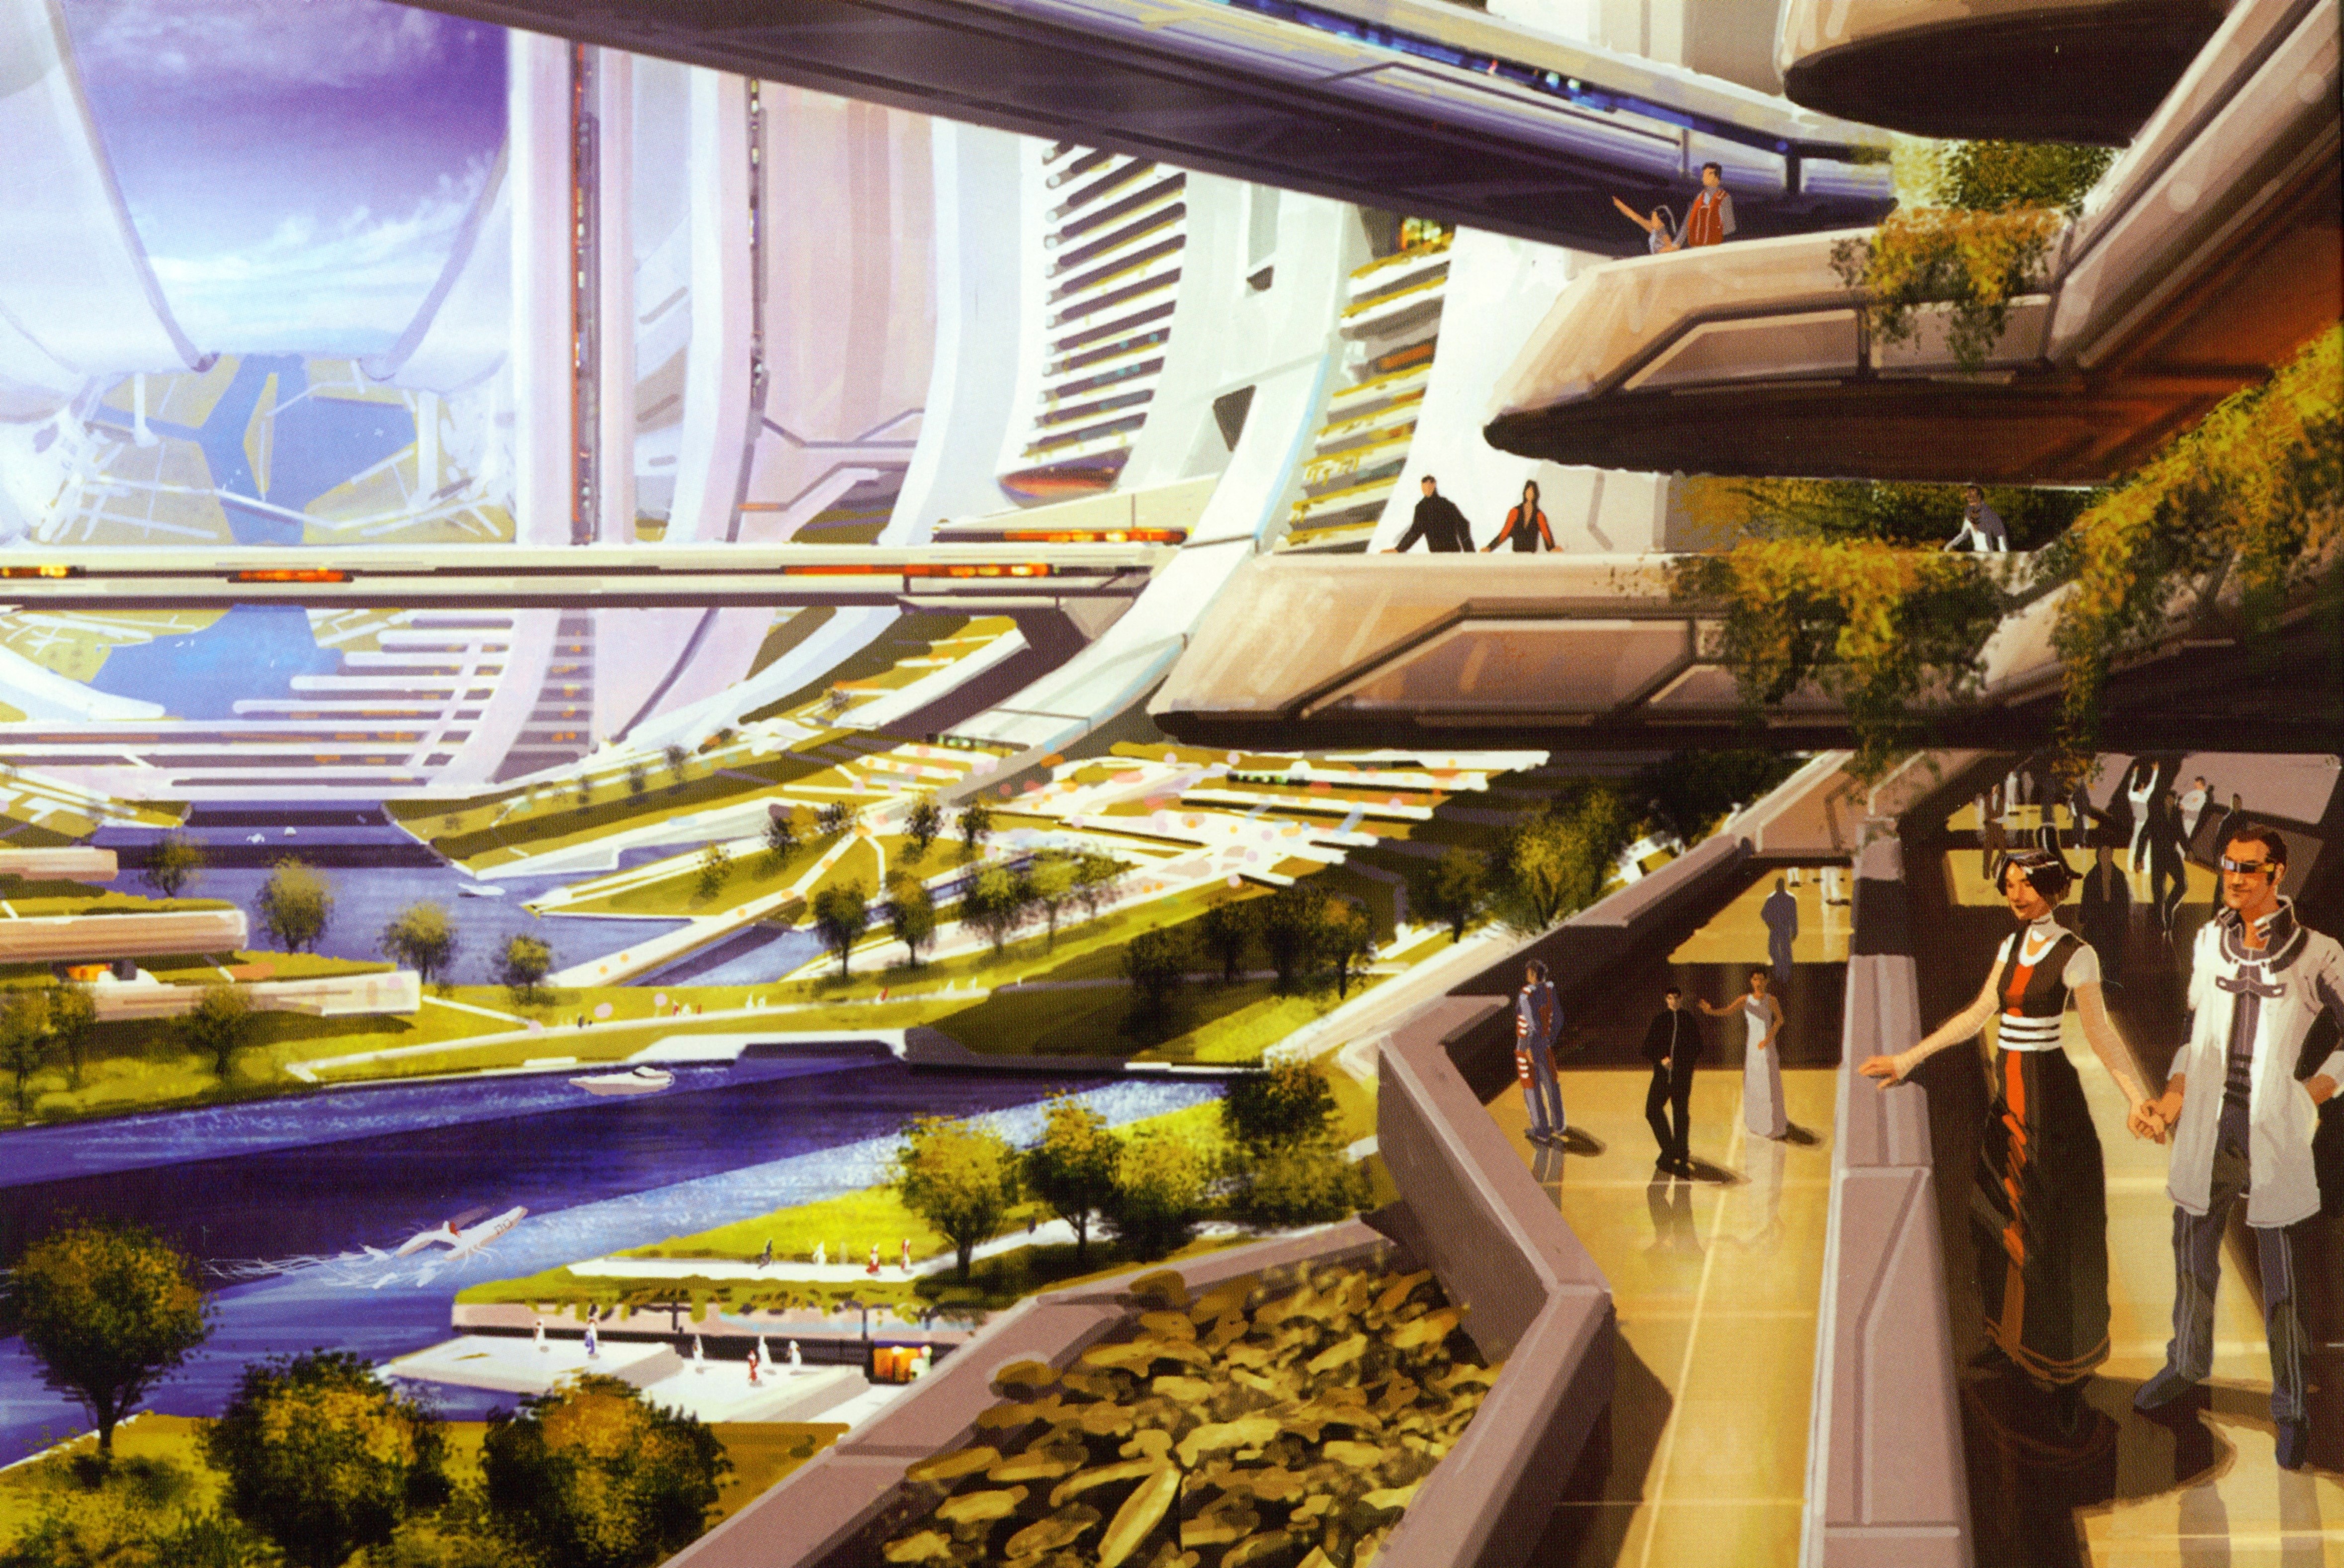 Незабываемое будущее. СИД МИД город будущего. Винсент Каллебот квартал будущего. СИД МИД концепт арт. Mass Effect Concept-Art Цитадель.